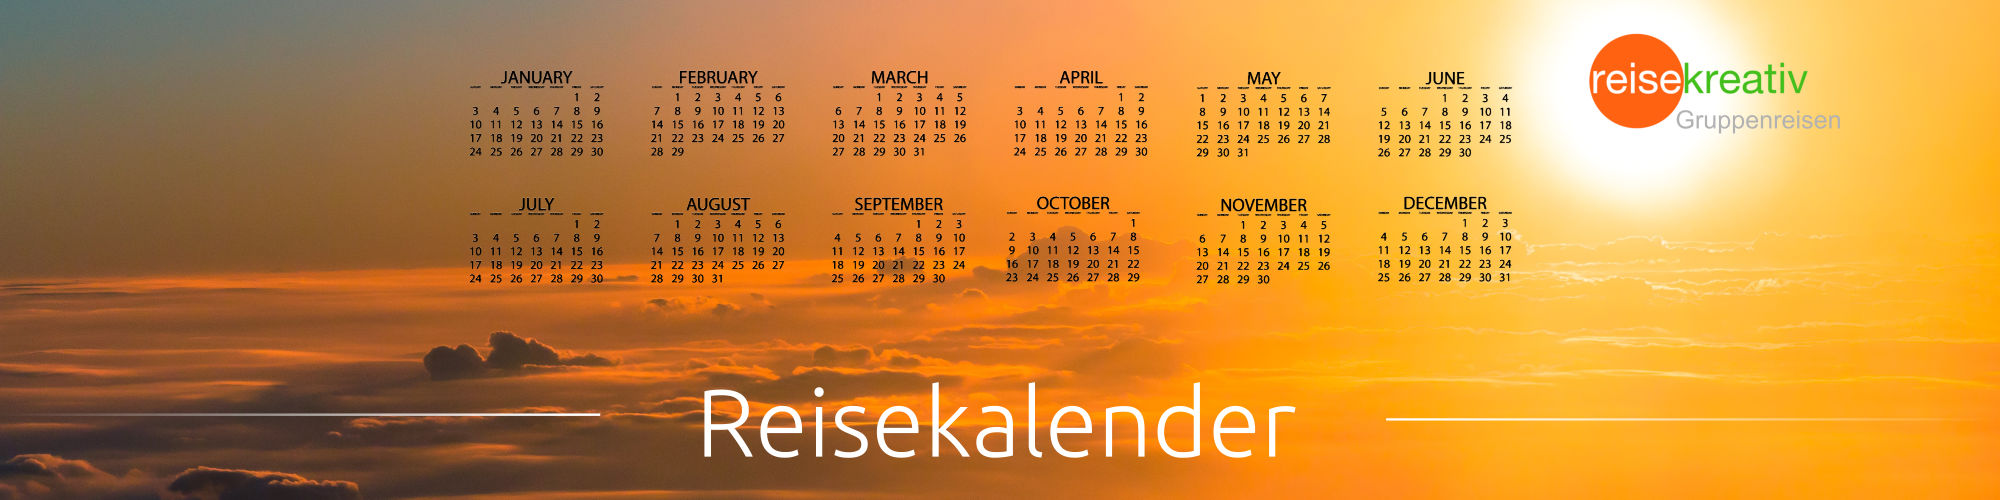 kalender_wolken